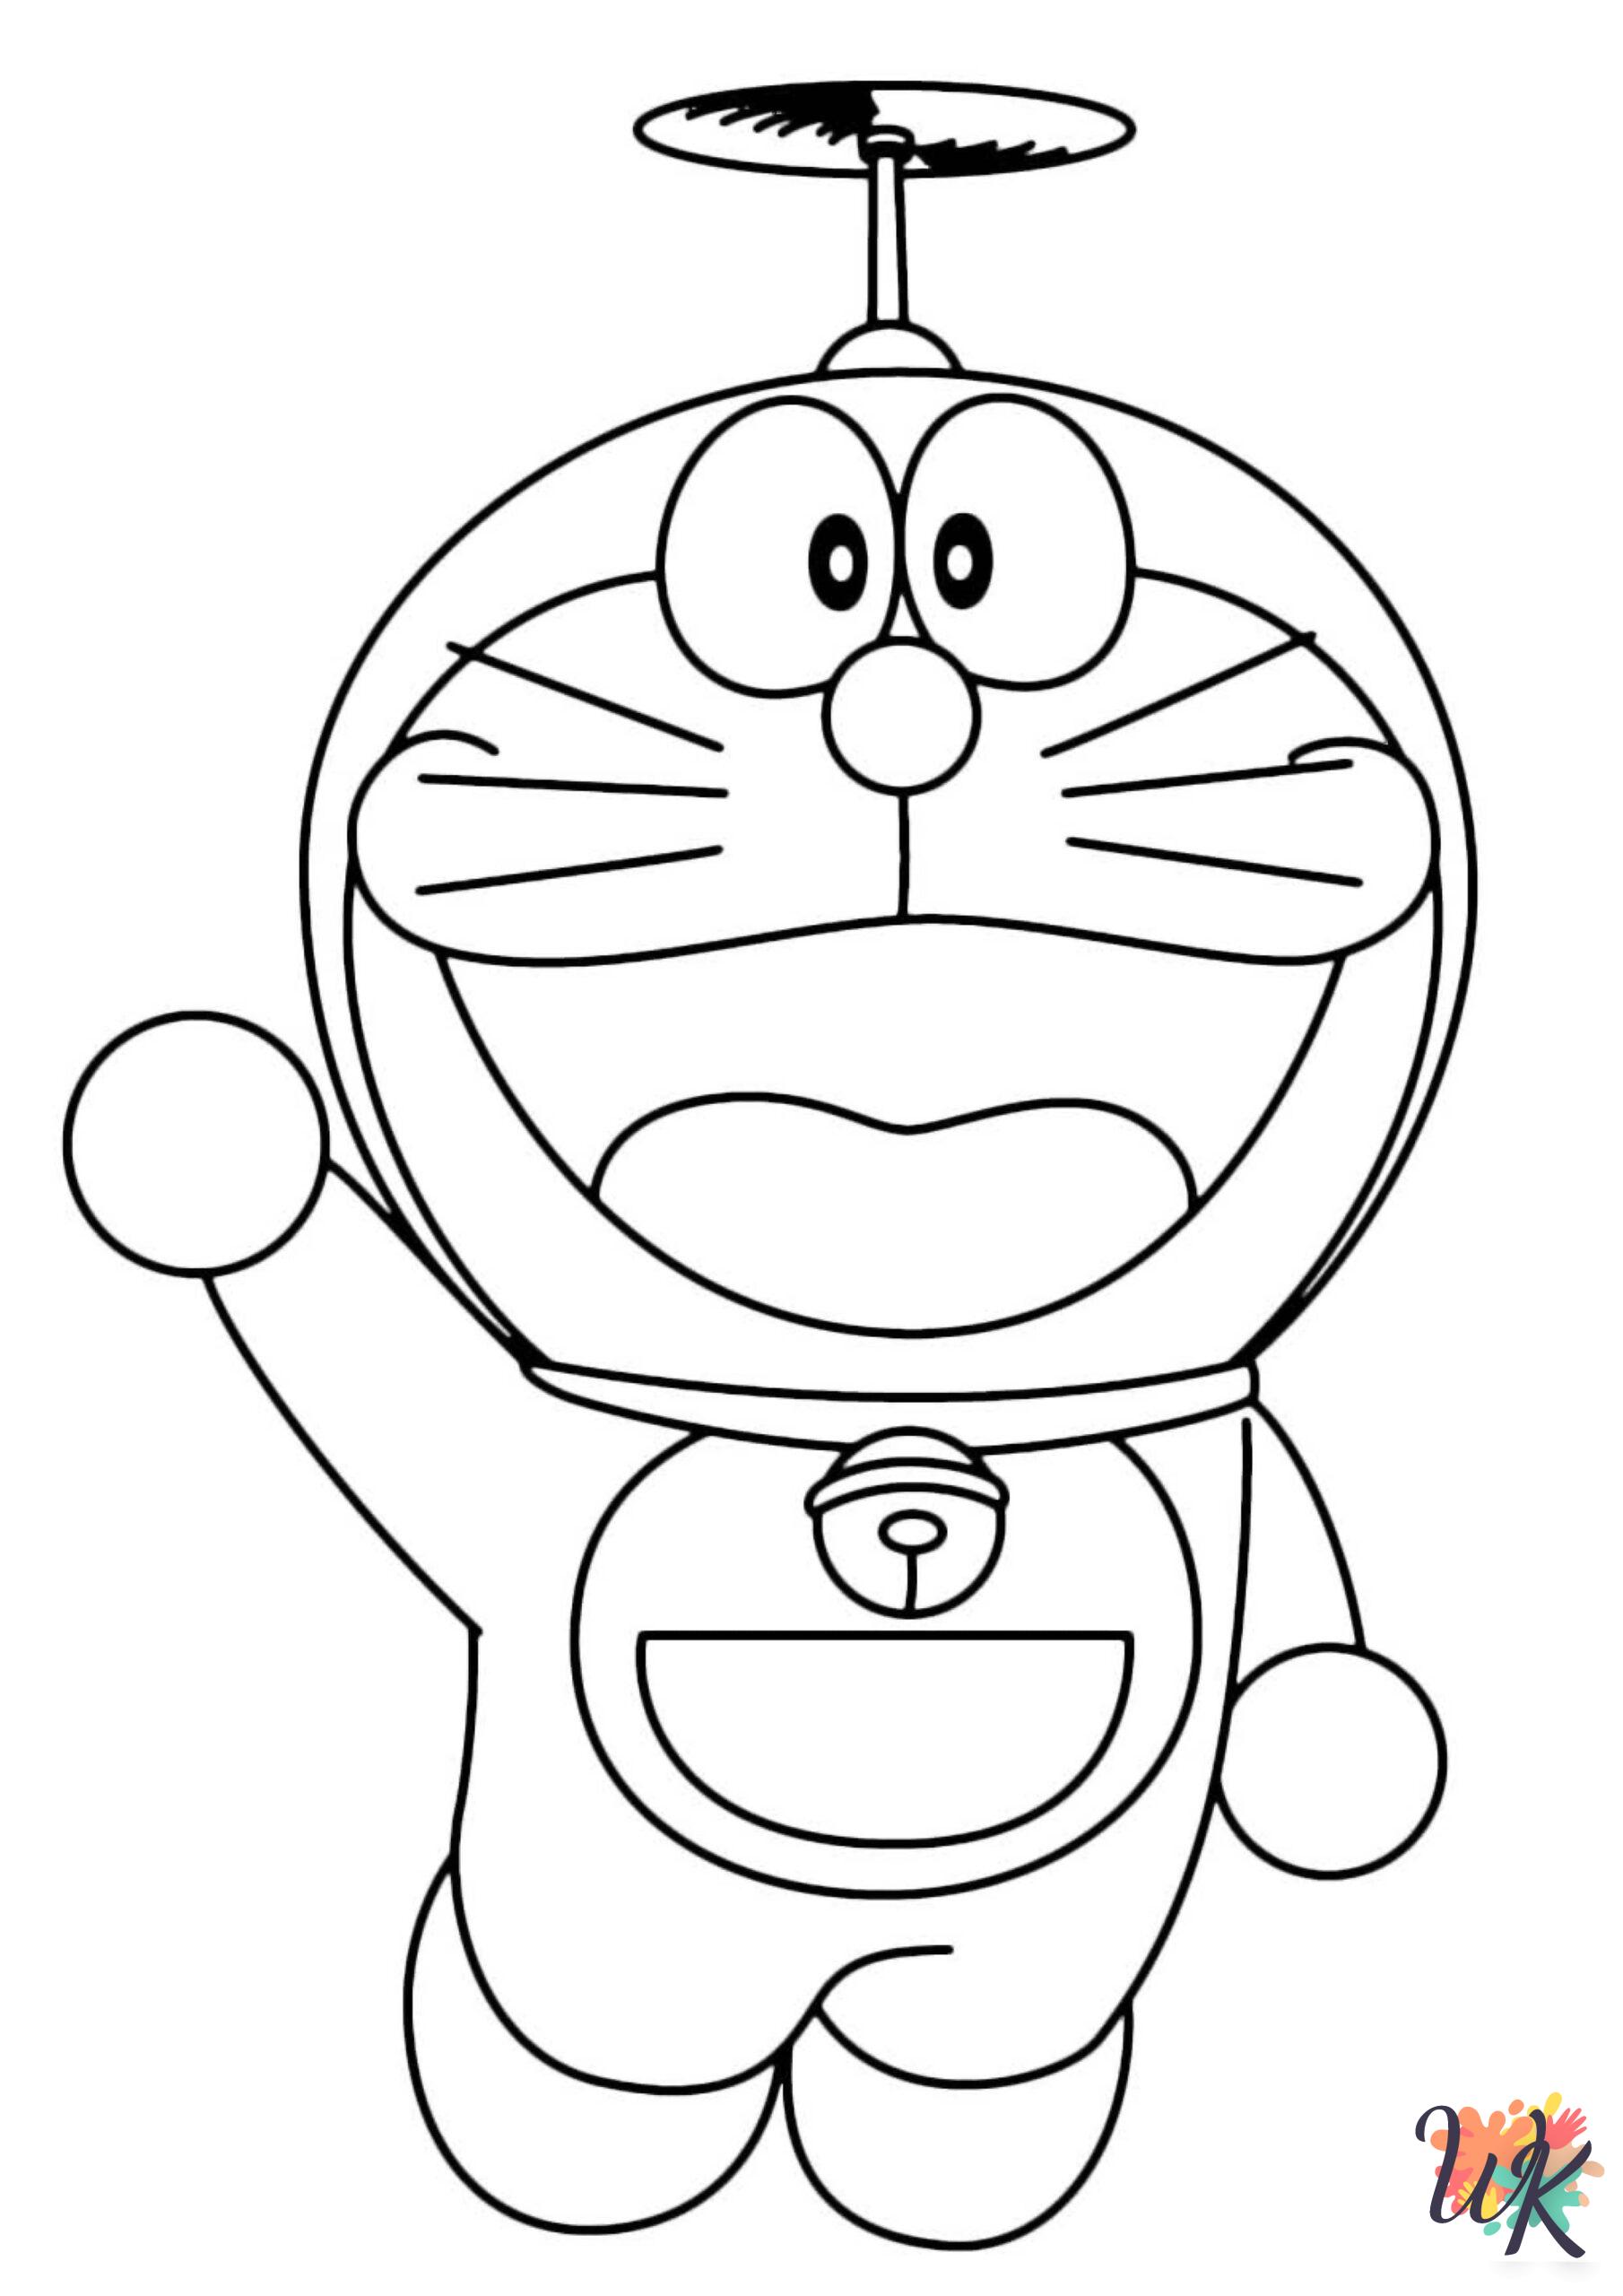 Doraemon coloring pages pdf 2